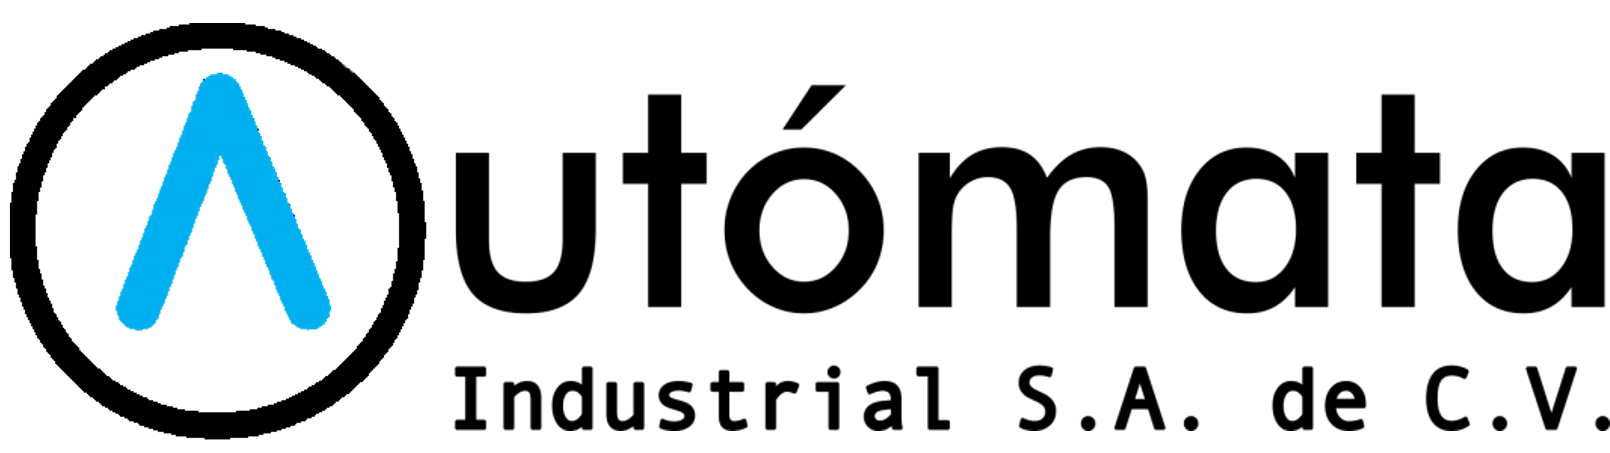 Logo Autómata Industrial